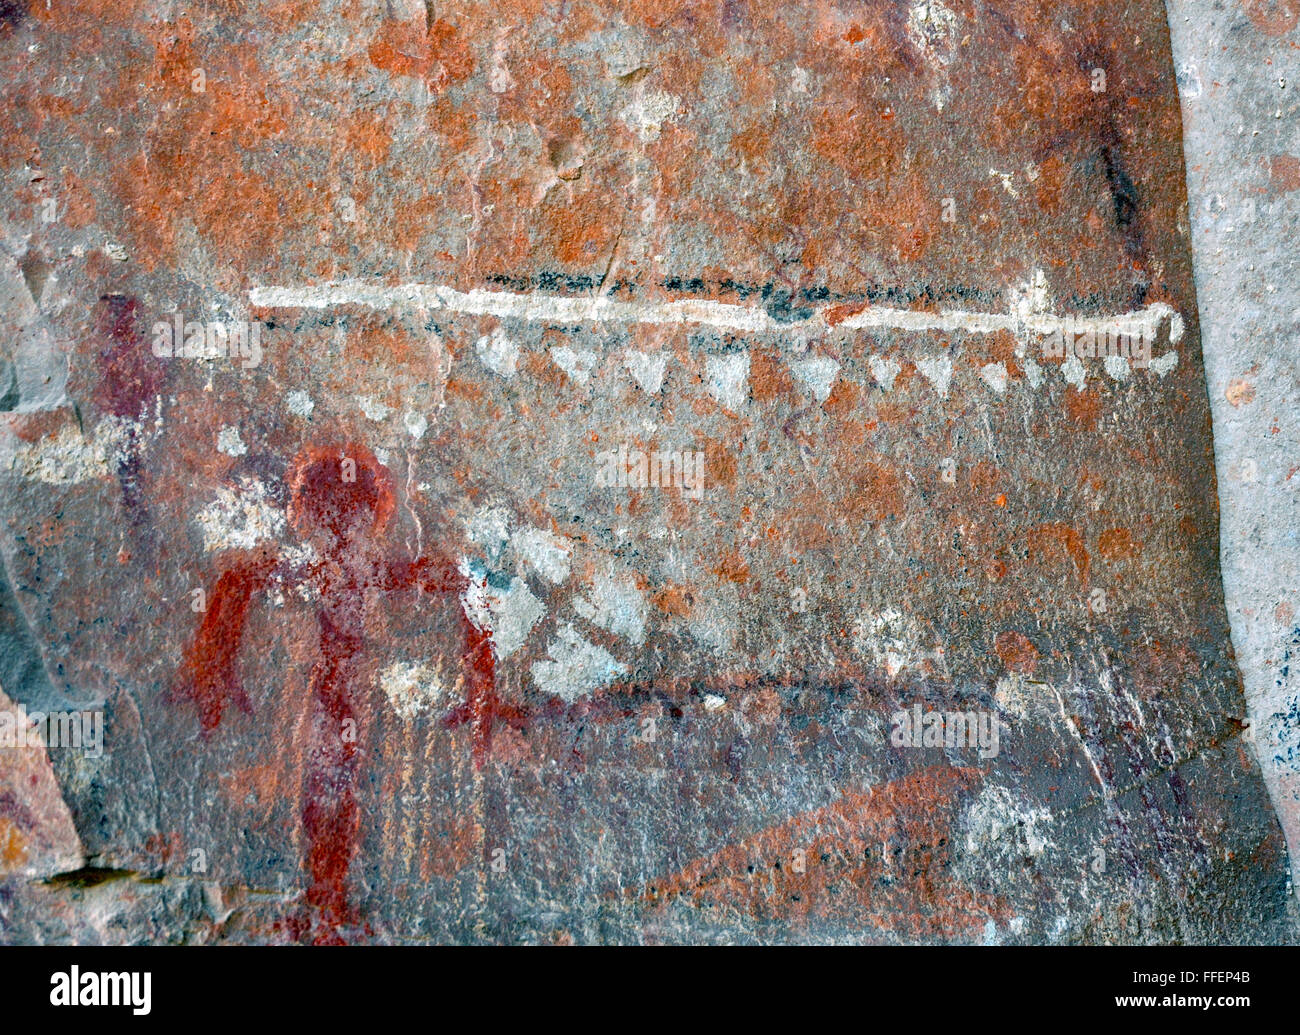 Rock art pictogramme libre dessinés ou peints sur le visage de roche, suggérer, scenses chasse cérémonie religieuse. Tribue Sinagua. La tribu Hopi. Banque D'Images